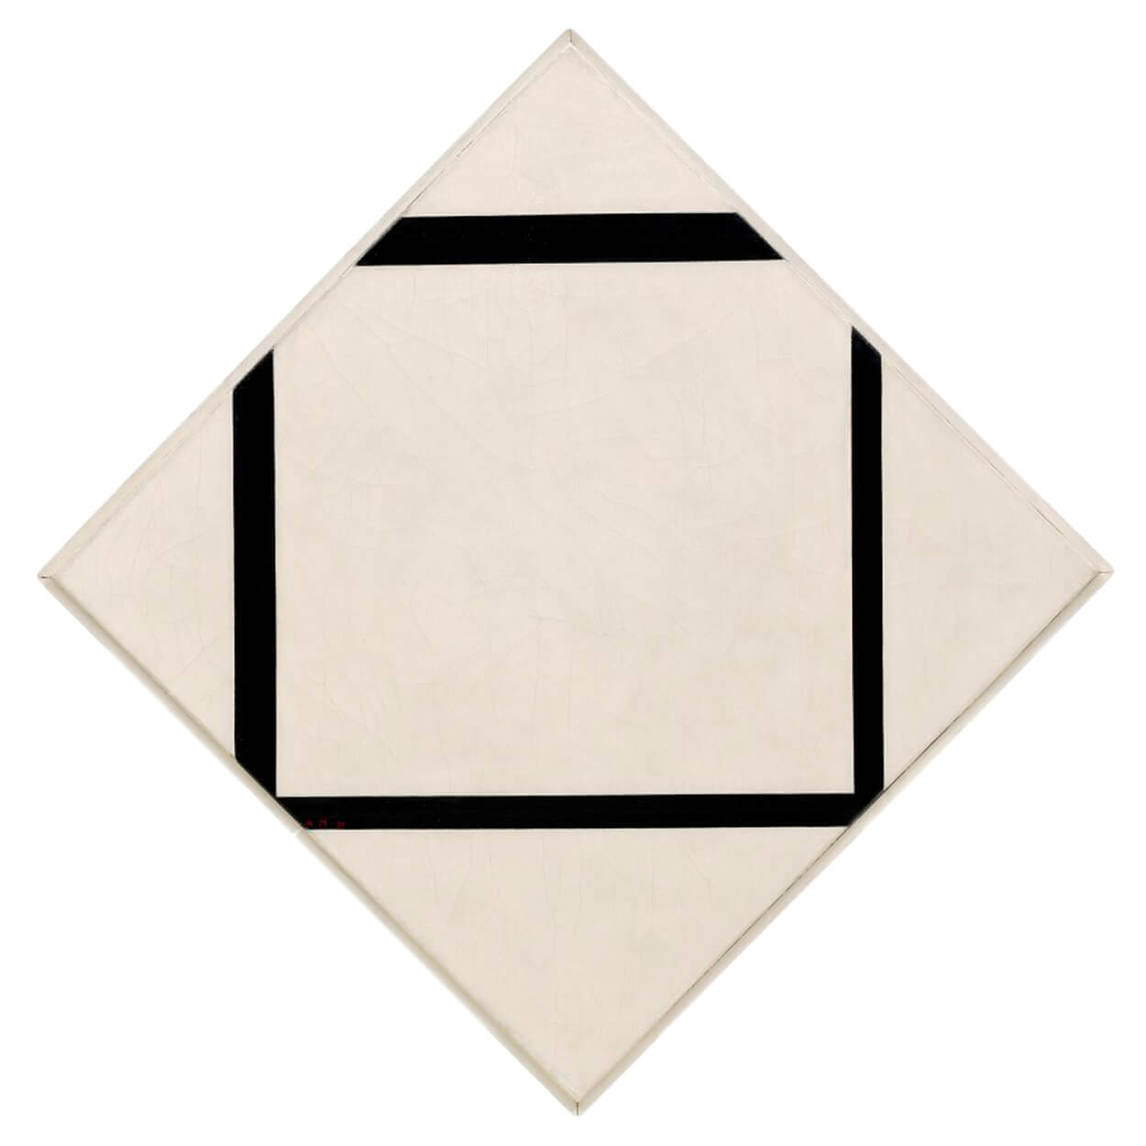 Piet Mondrian, Composition no 1 : Losange avec quatre lignes, 1930